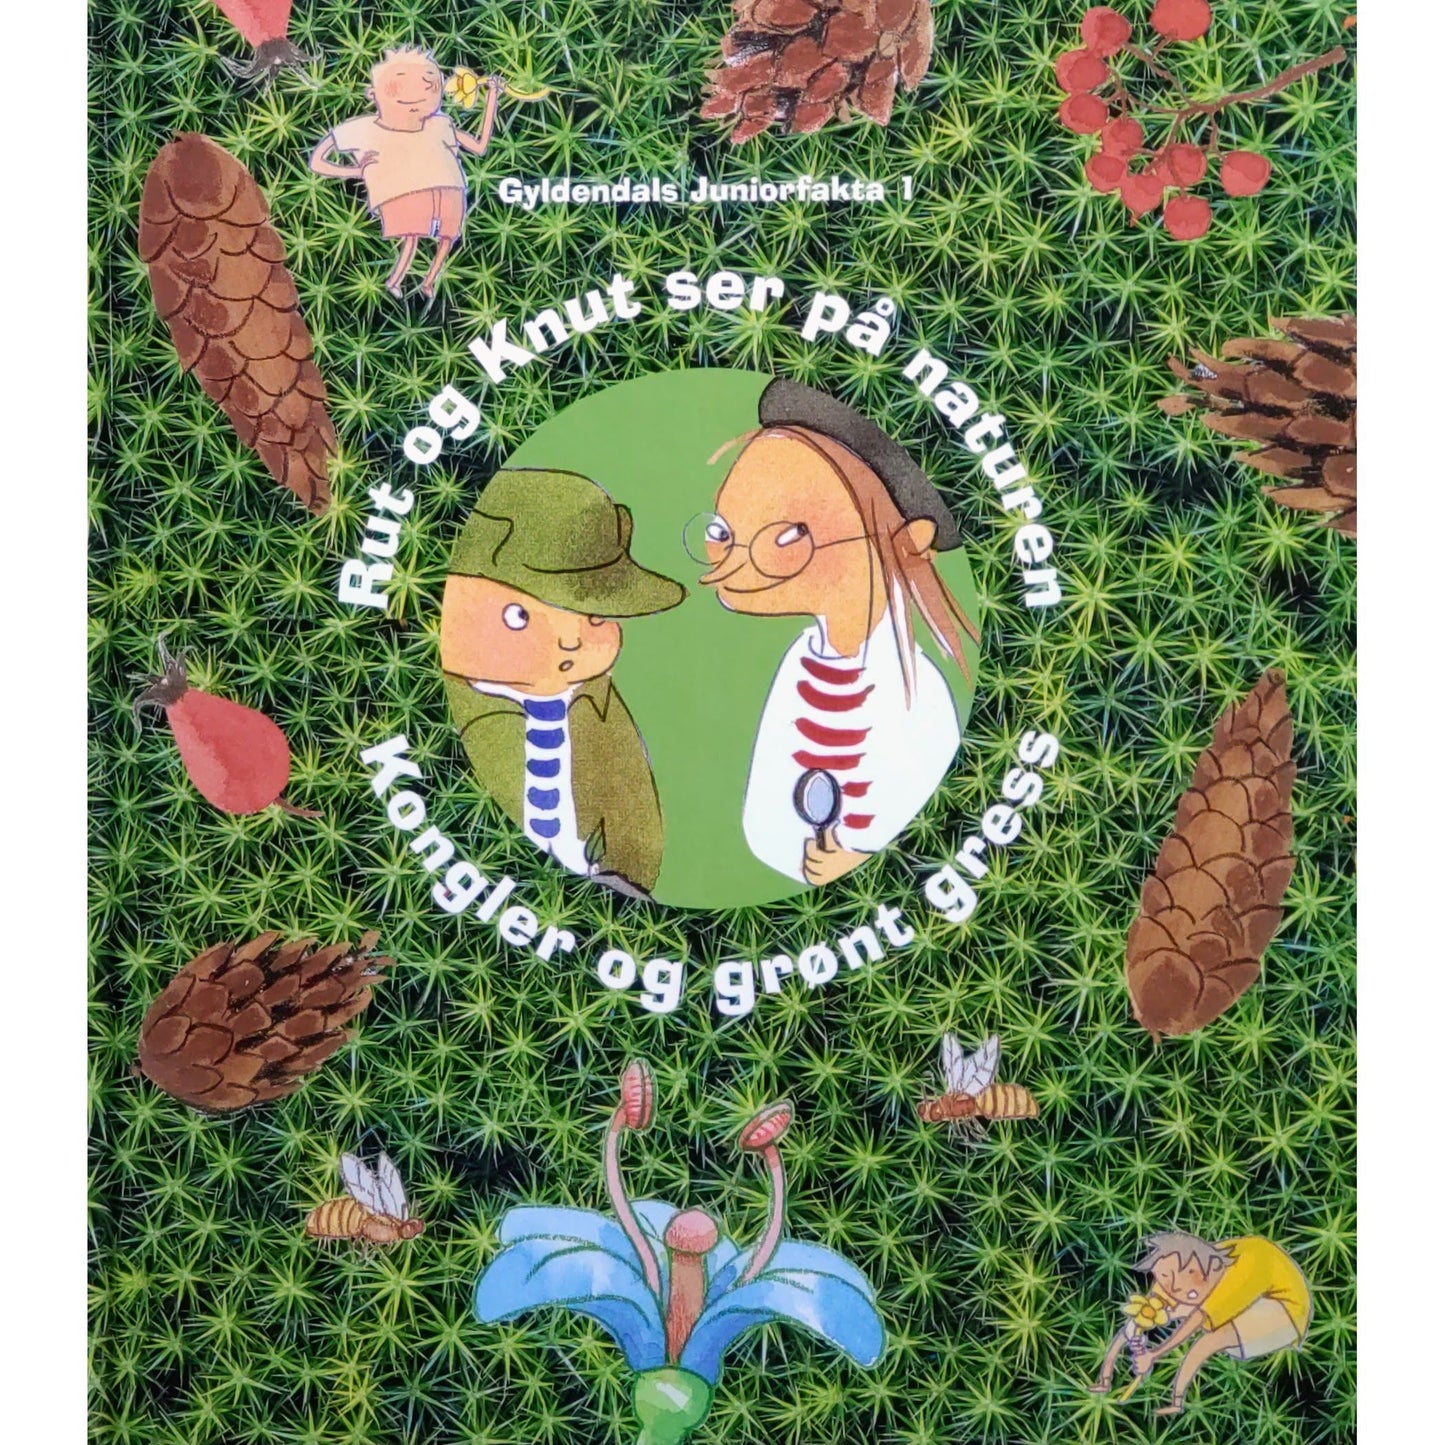 Rut og Knut ser på naturen. Kongler og grønt gress. Gyldendals Juniorfakta. Brukte bøker